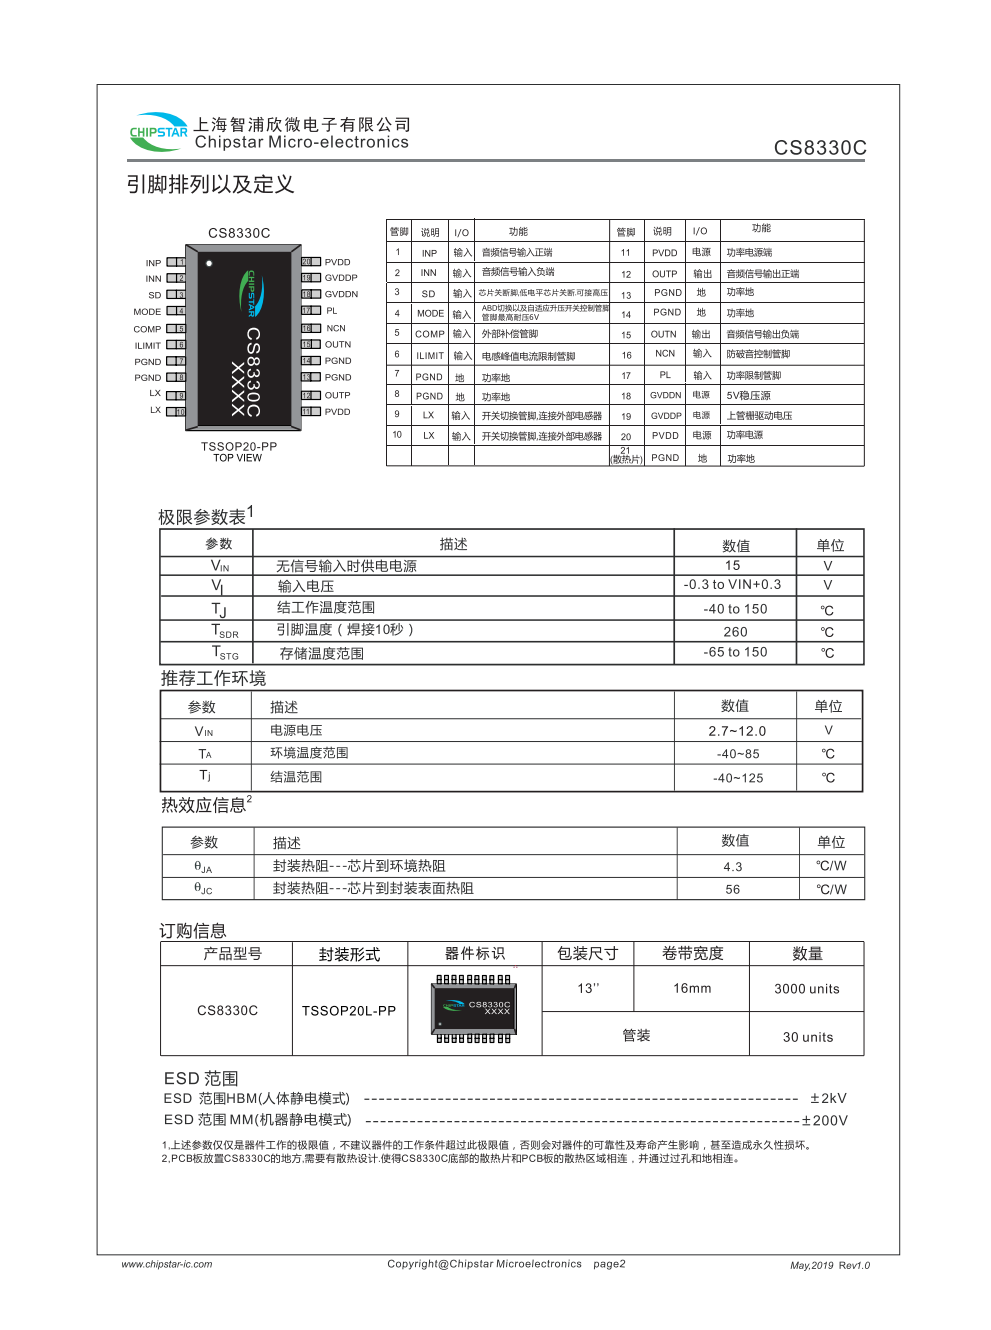 CS8330C是一款可以兼顾单节锂电池和12V适配器双电源供电应用